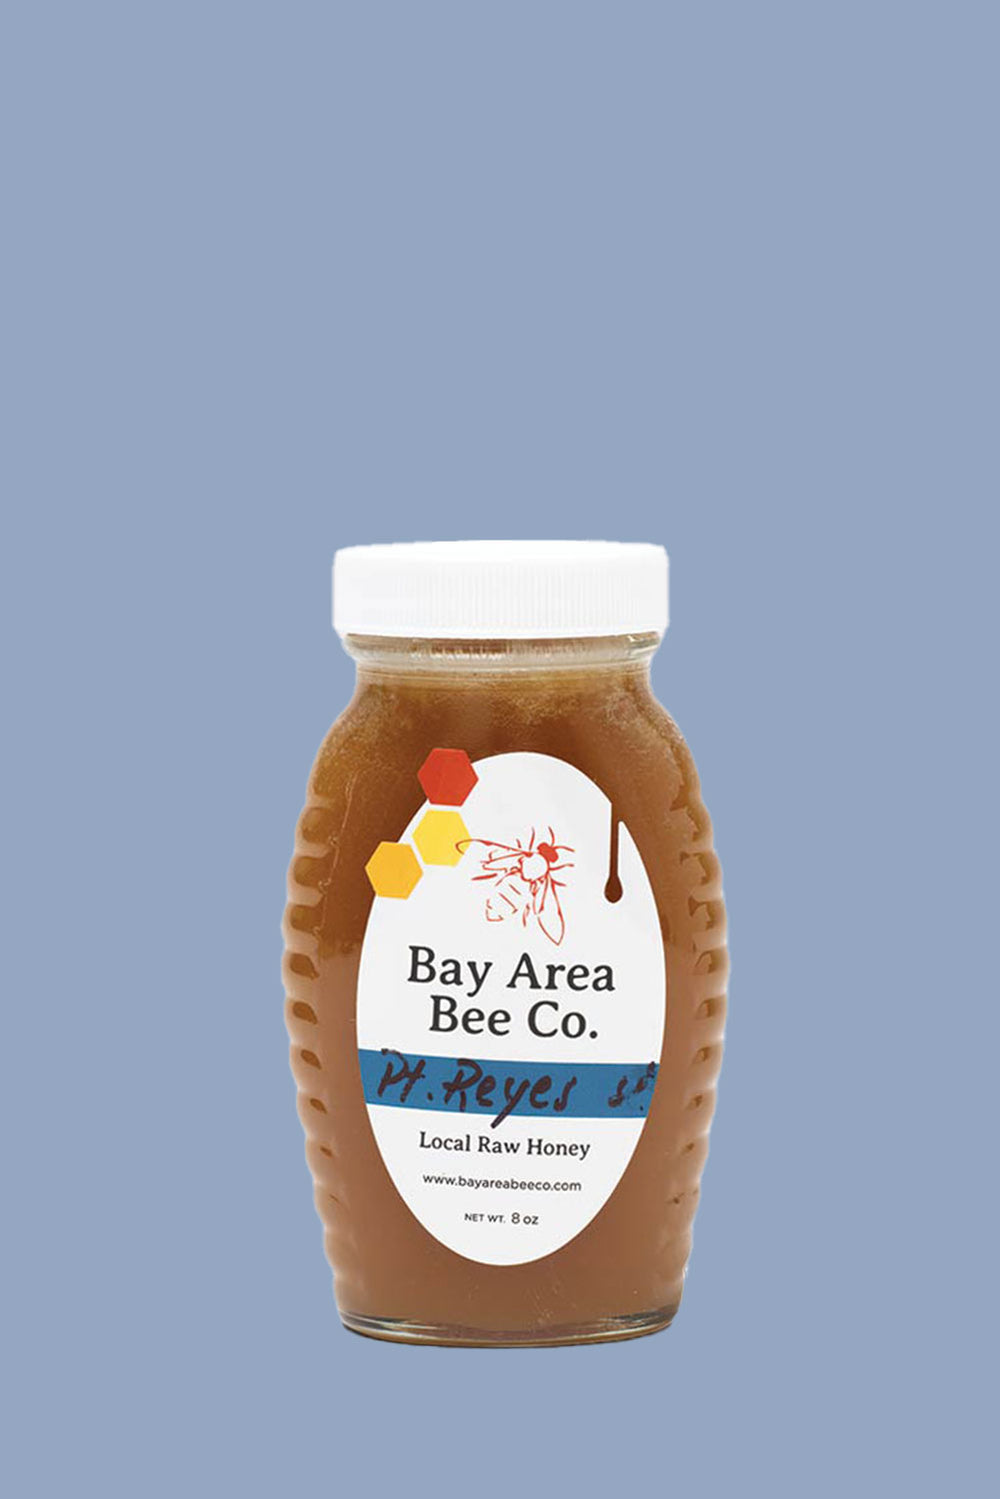 Bay Area Bee Co. honey